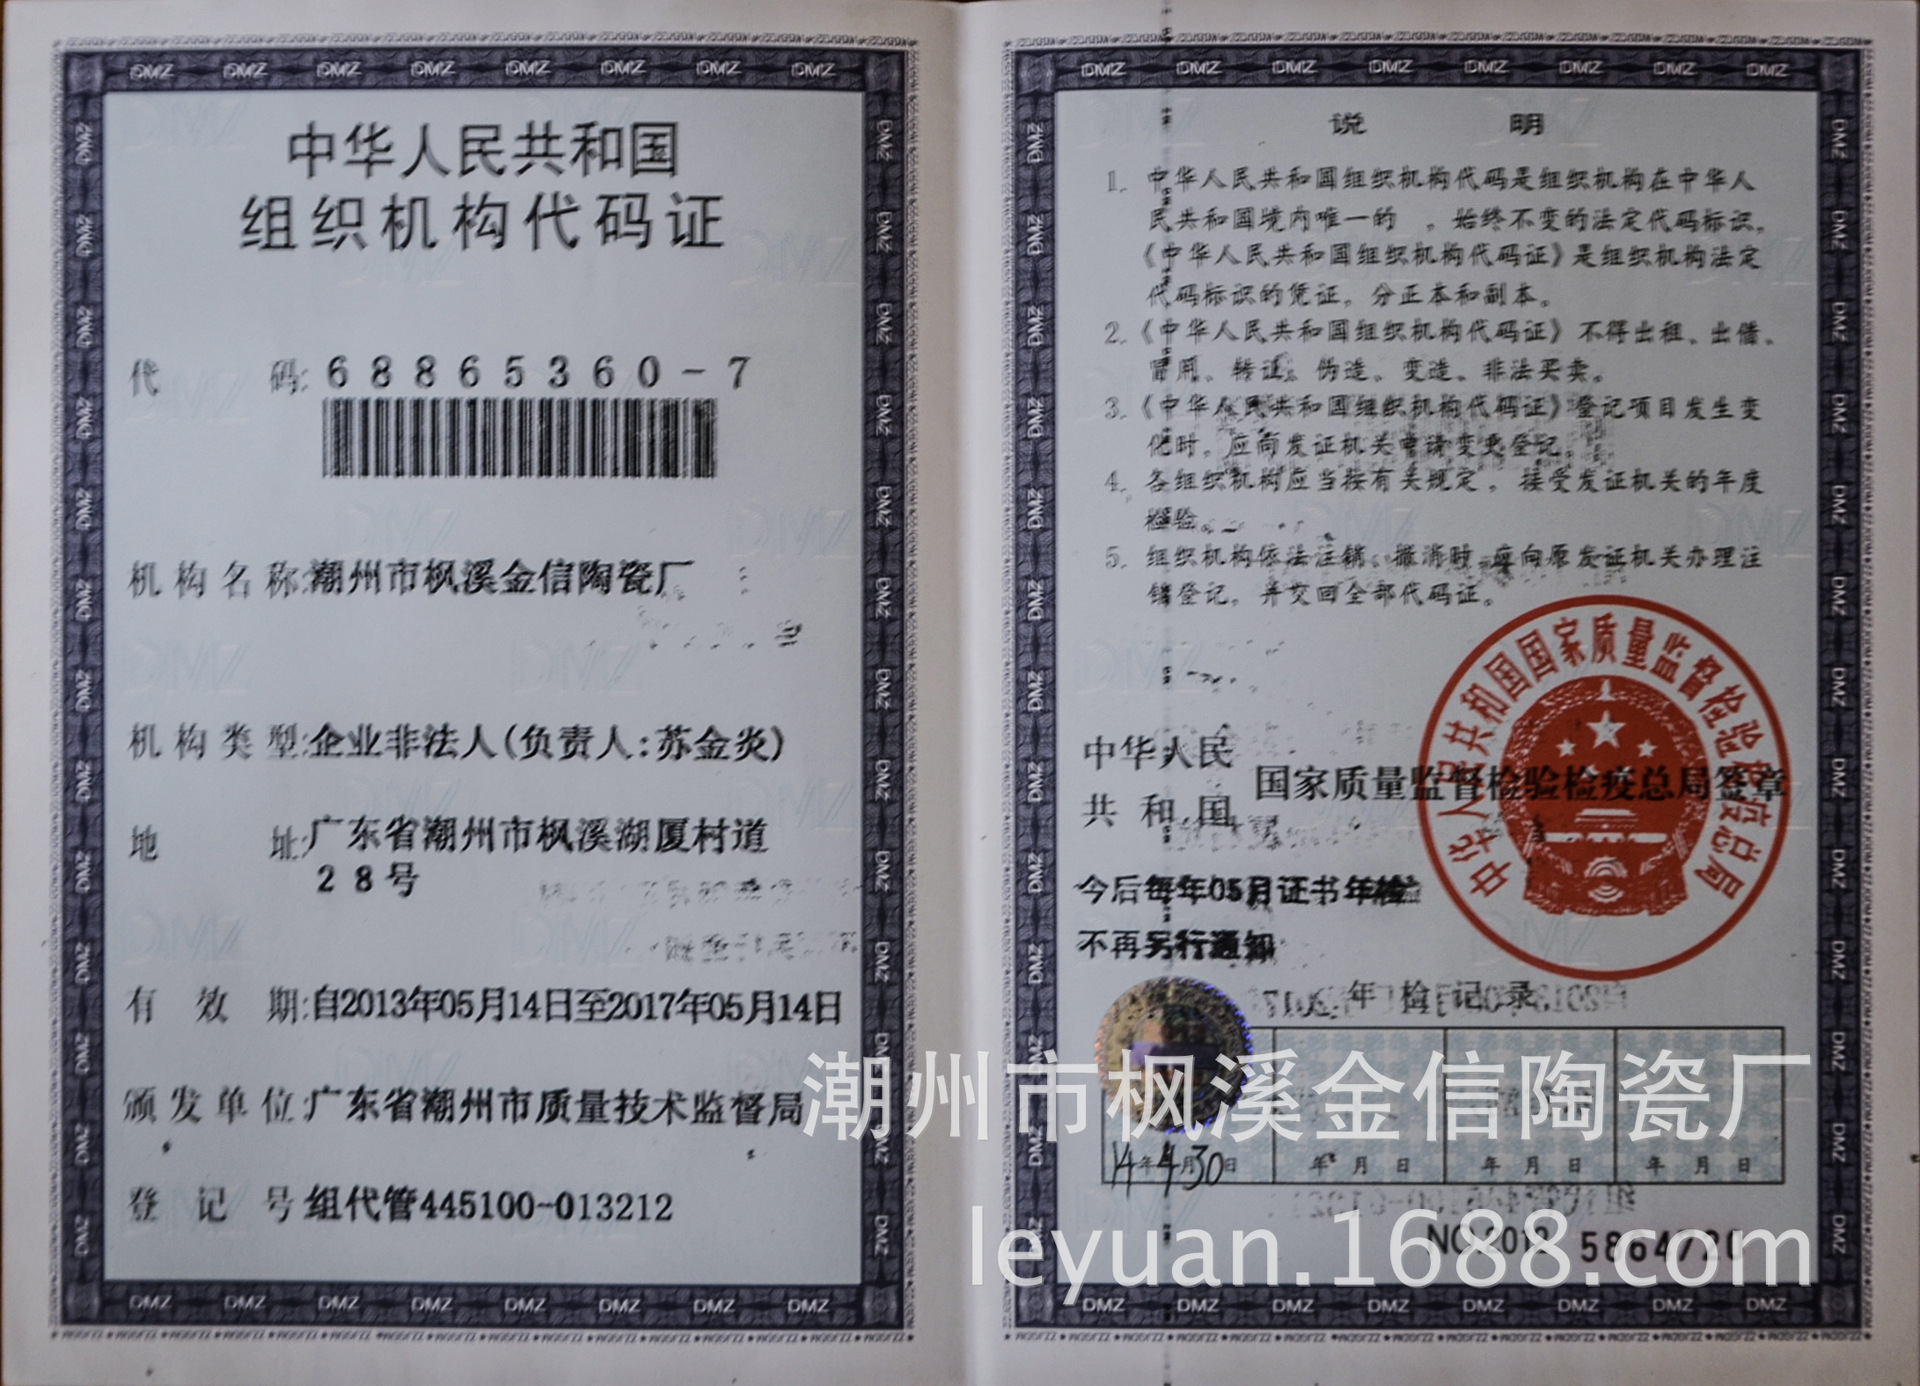 潮州市枫溪金信陶瓷厂 证书荣誉 组织机构代码证